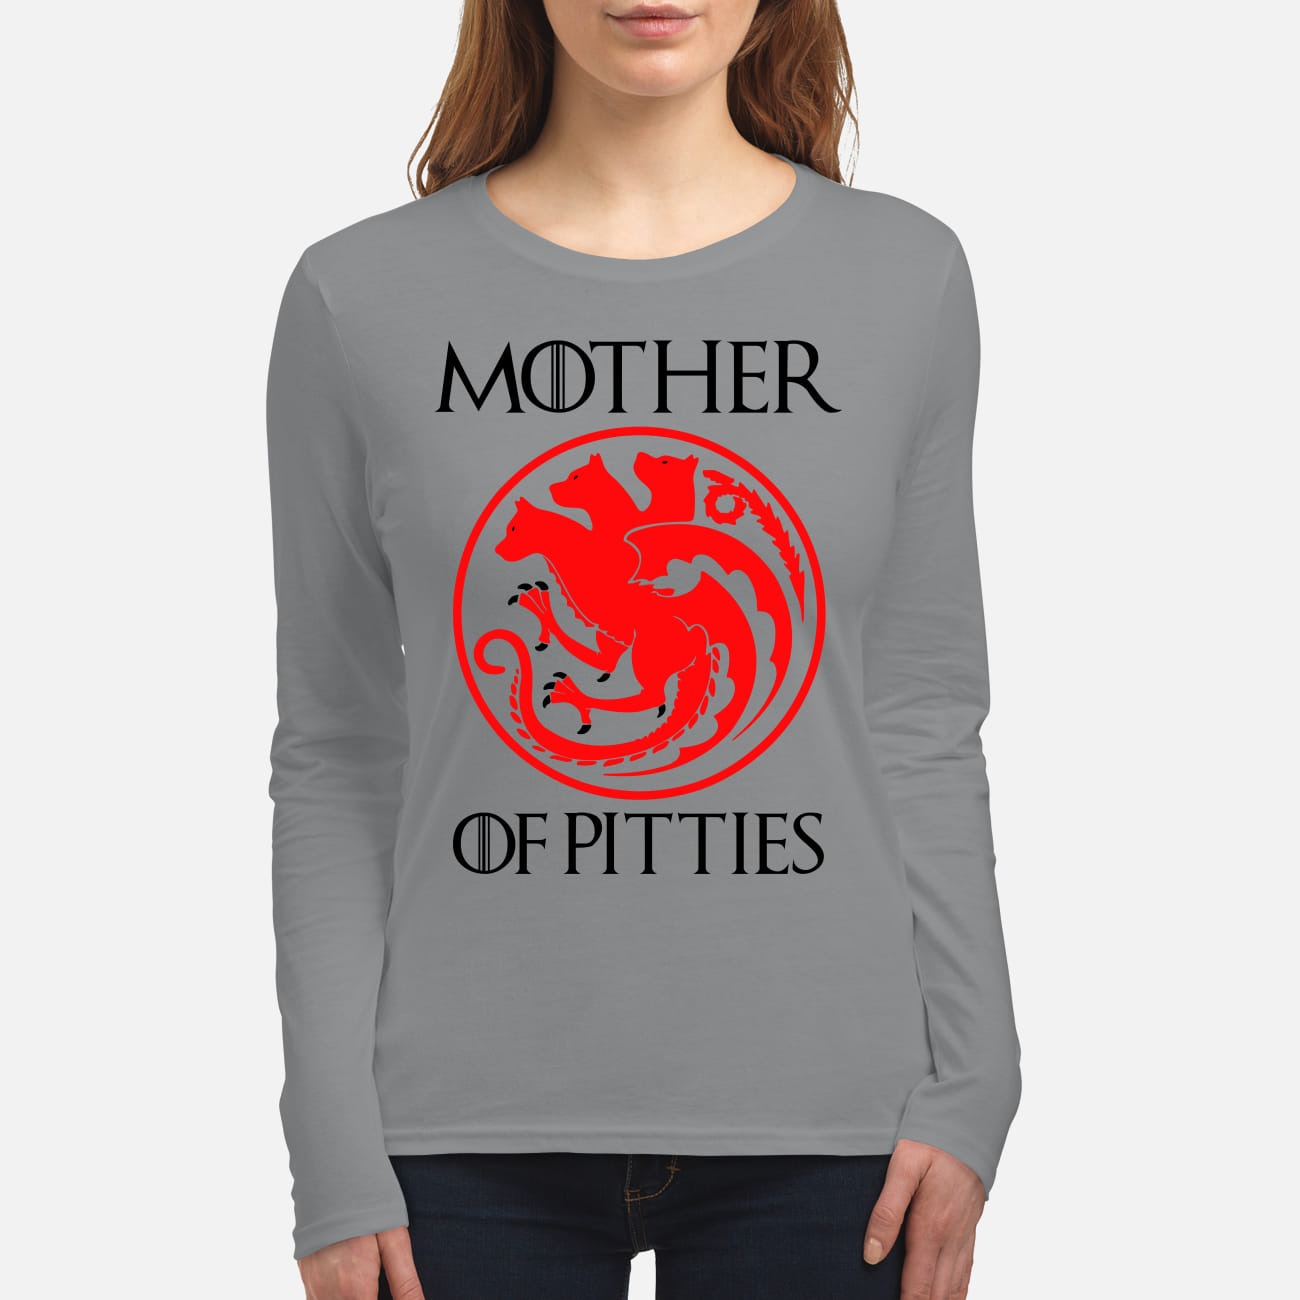 GOT Mother of pitties women's long sleeved shirt